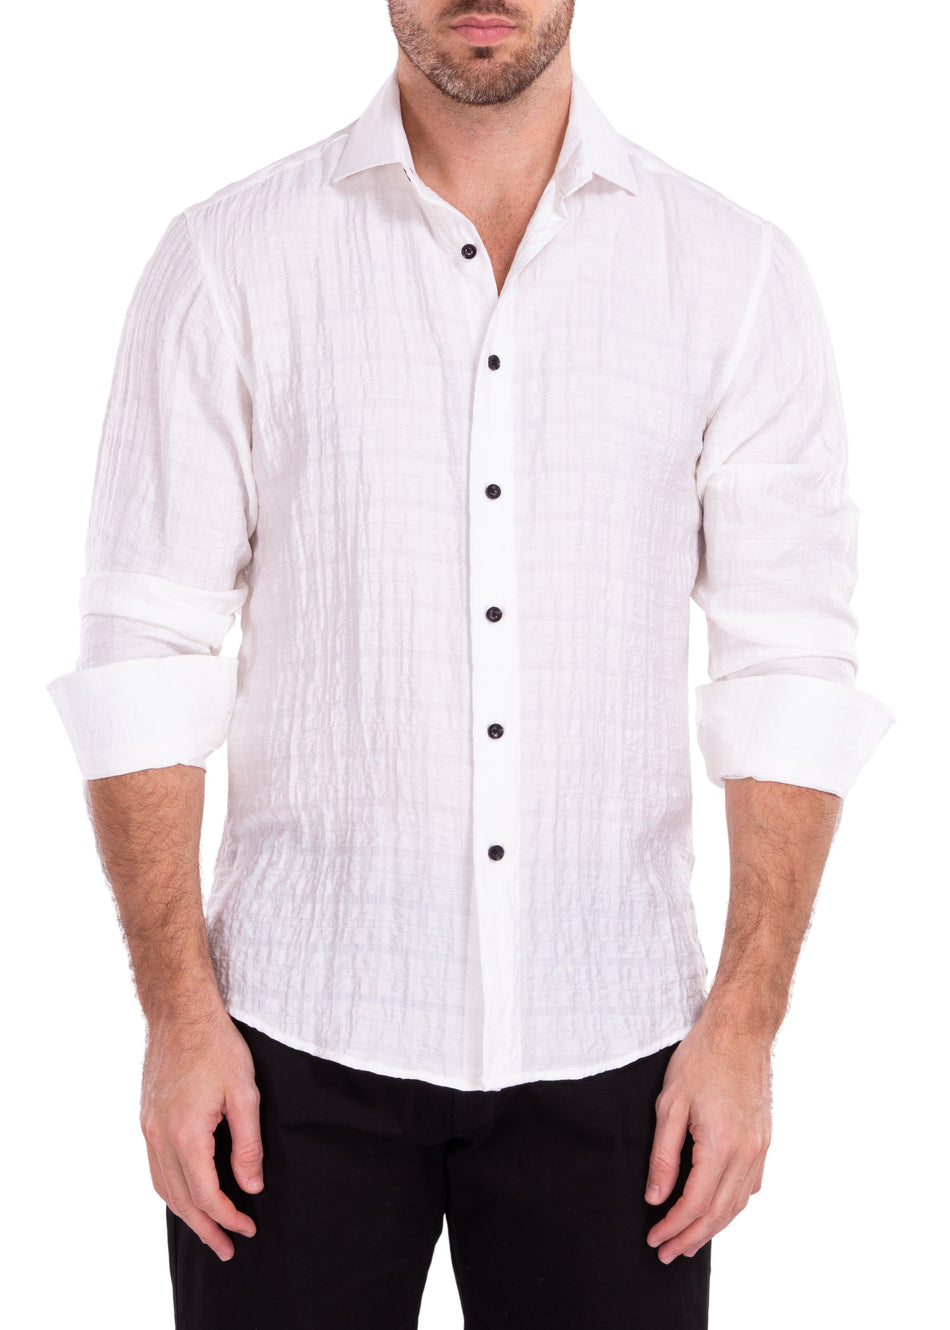 222201 - White Button Up Long Sleeve Dress Shirt